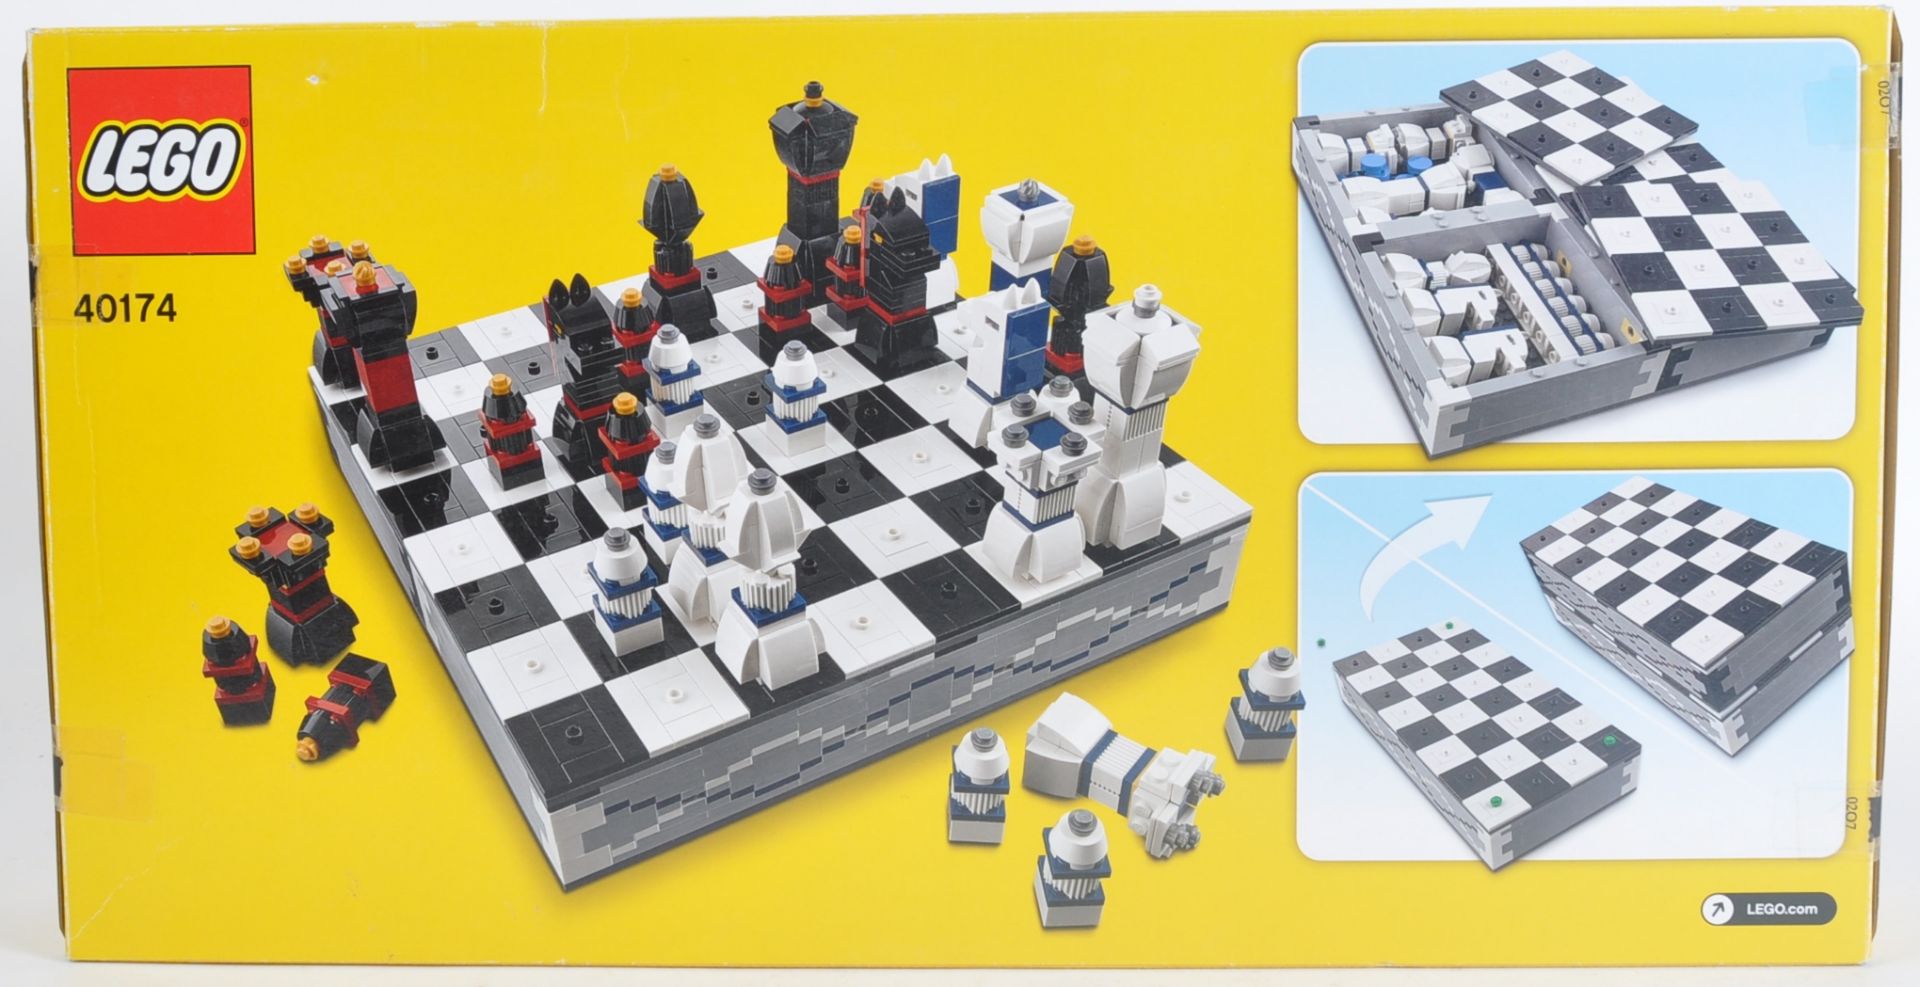 LEGO SET - 40174 - LEGO CHESS - Image 2 of 4